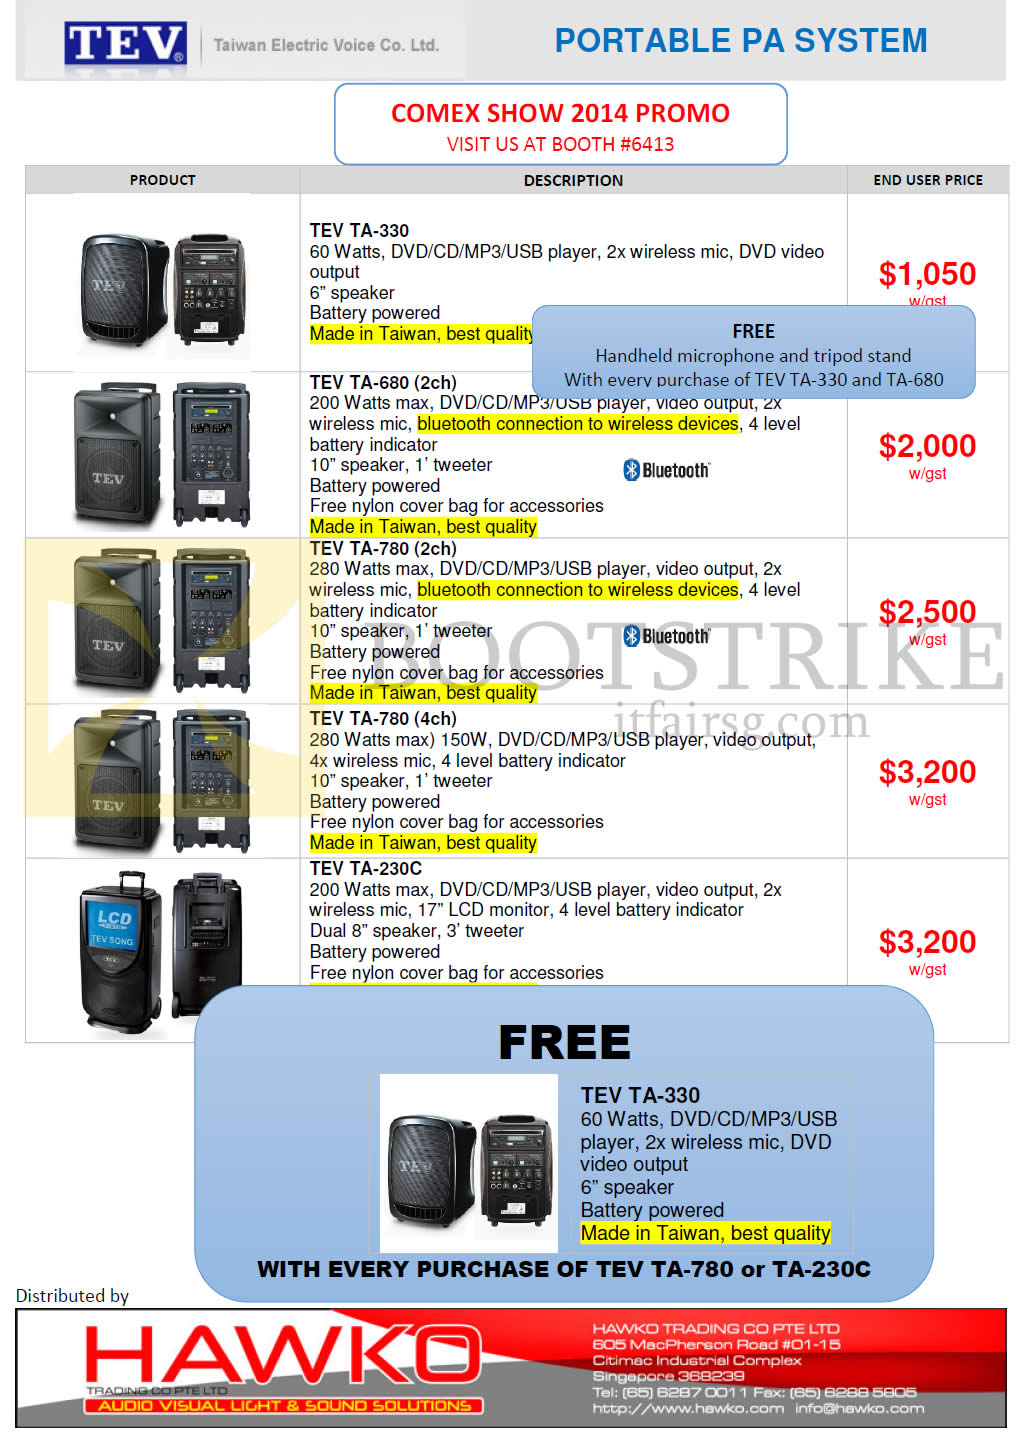 COMEX 2014 price list image brochure of Hawko Portable PA System TEV TA-330, TA-680, TA-780, TA-230C